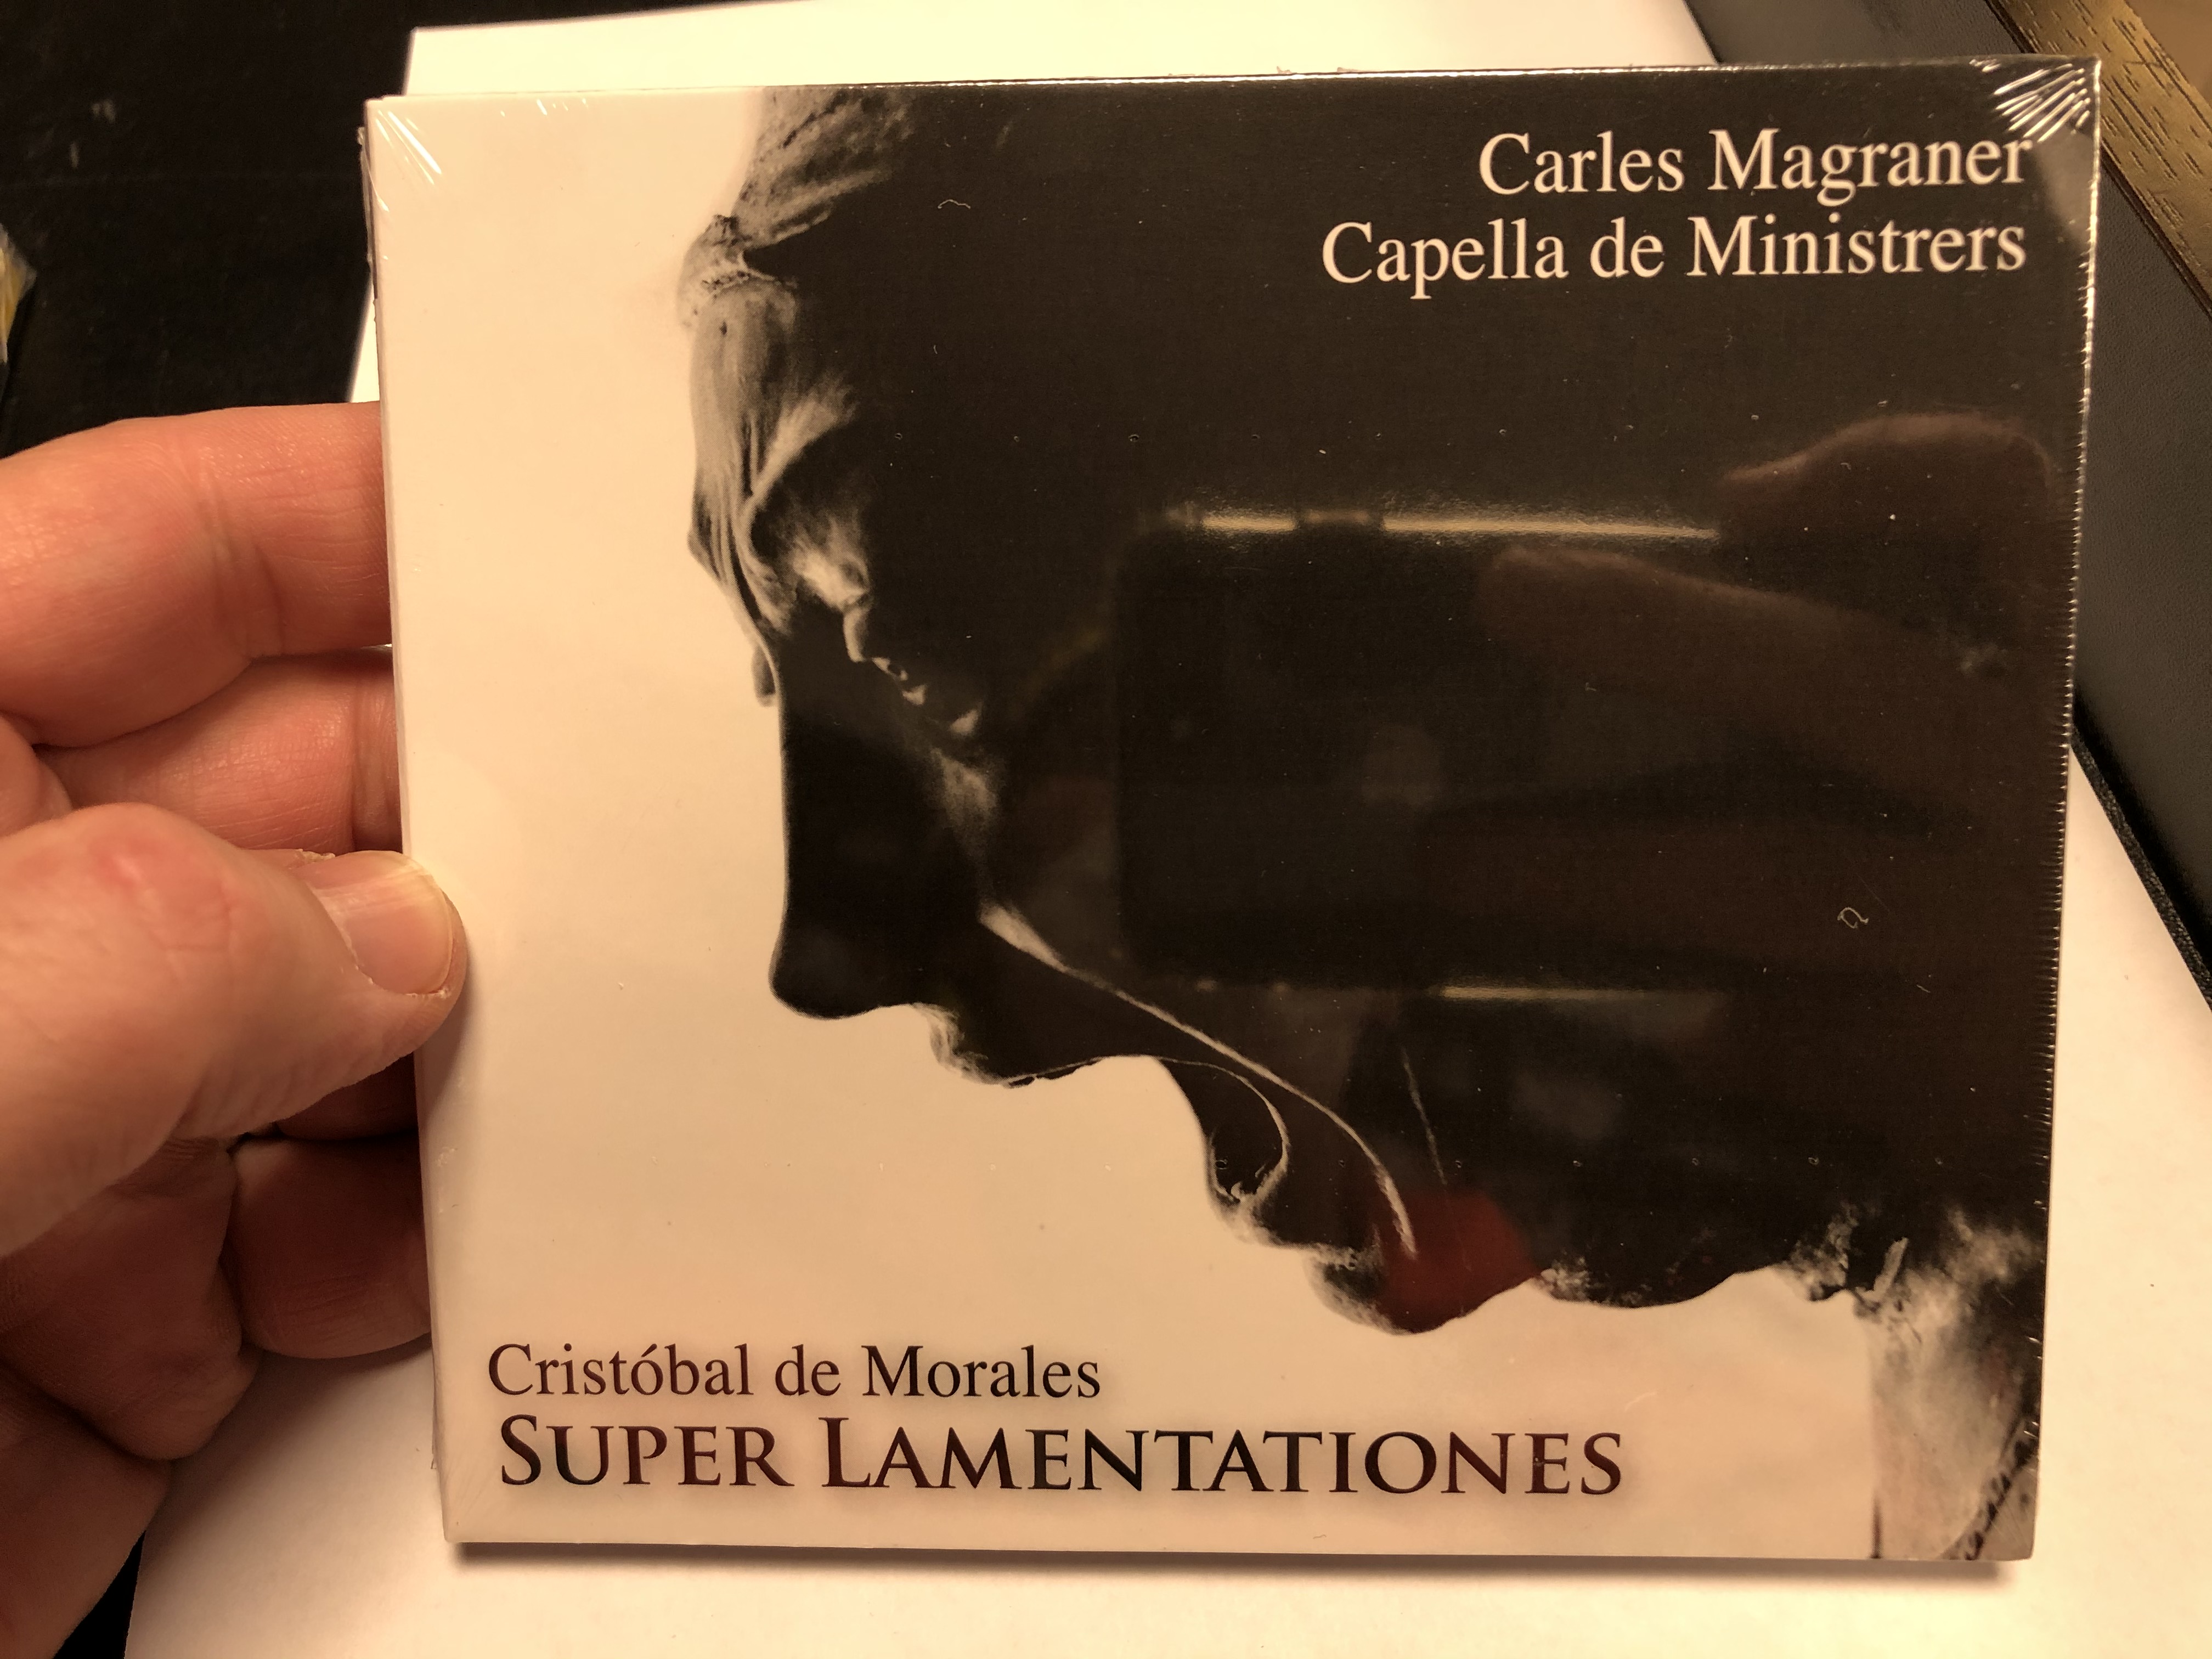 carles-magraner-capella-de-ministrers-cristobal-de-morales-super-lamentationes-audio-cd-v-114-2020-1-.jpg